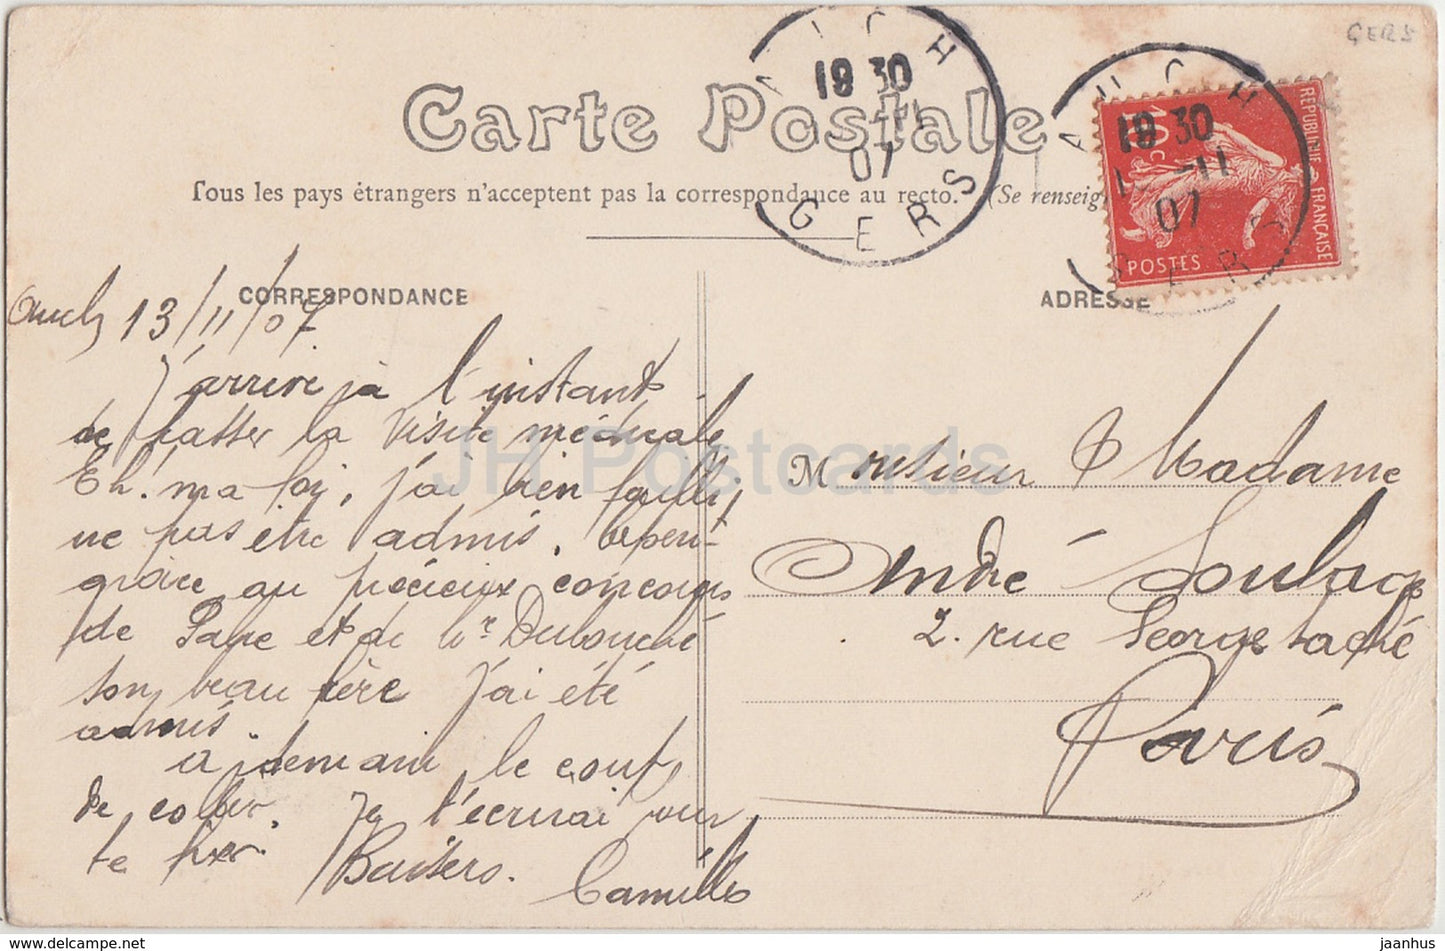 Auch – Bibliotheque – Bibliothek – 1907 – alte Postkarte – Frankreich – gebraucht